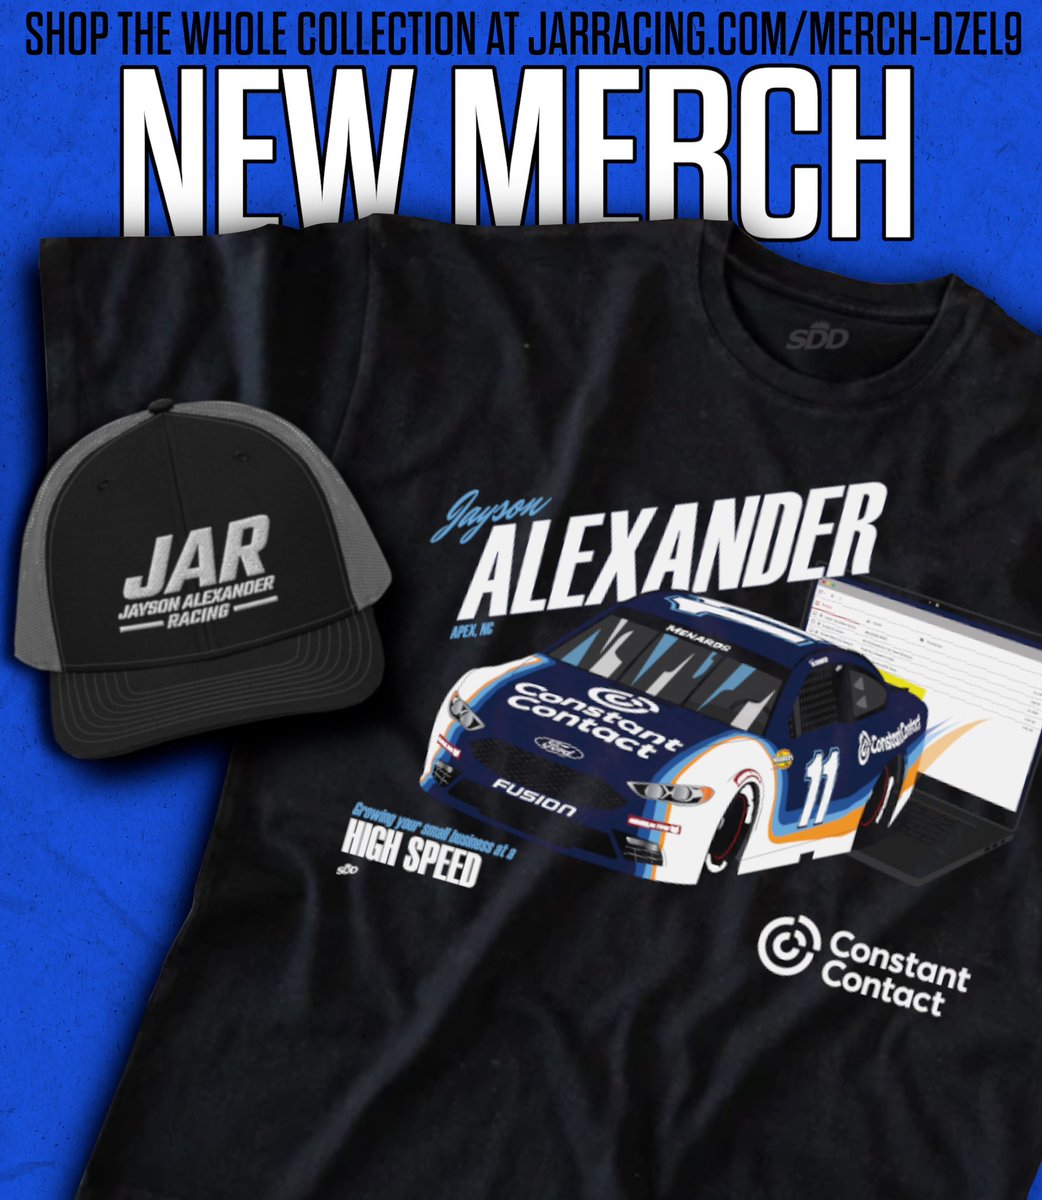 KICK IT IN HIGH SPEED💨

The Jayson Alexander Racing x @ConstantContact shirt is HERE

📱: jarracing.com/merch-Dzel9

@ConstantContact | #OneCTCT